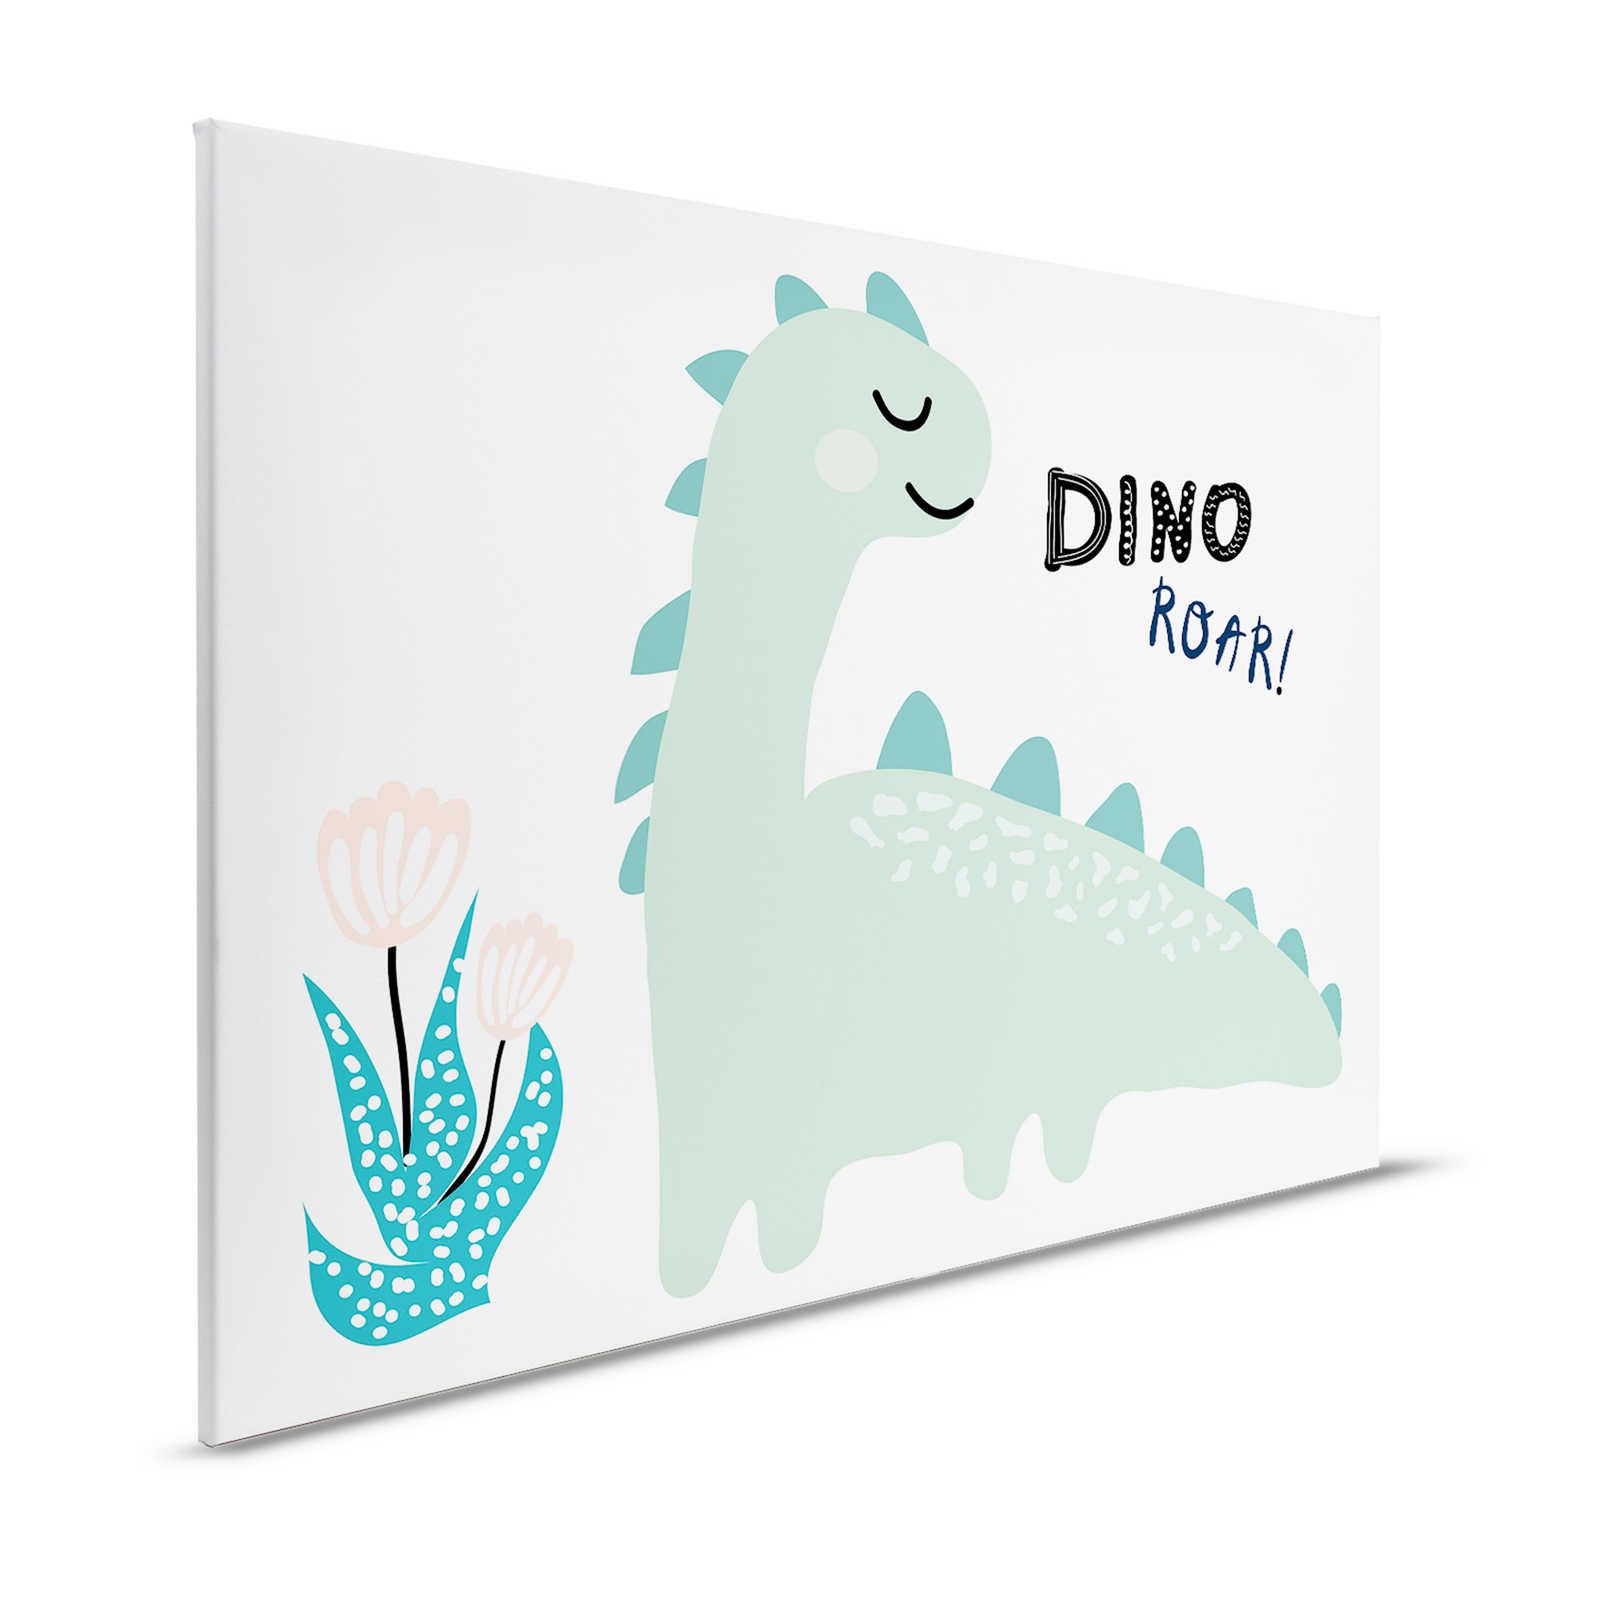 Leinwand mit gemaltem Dinosaurier – 120 cm x 80 cm
